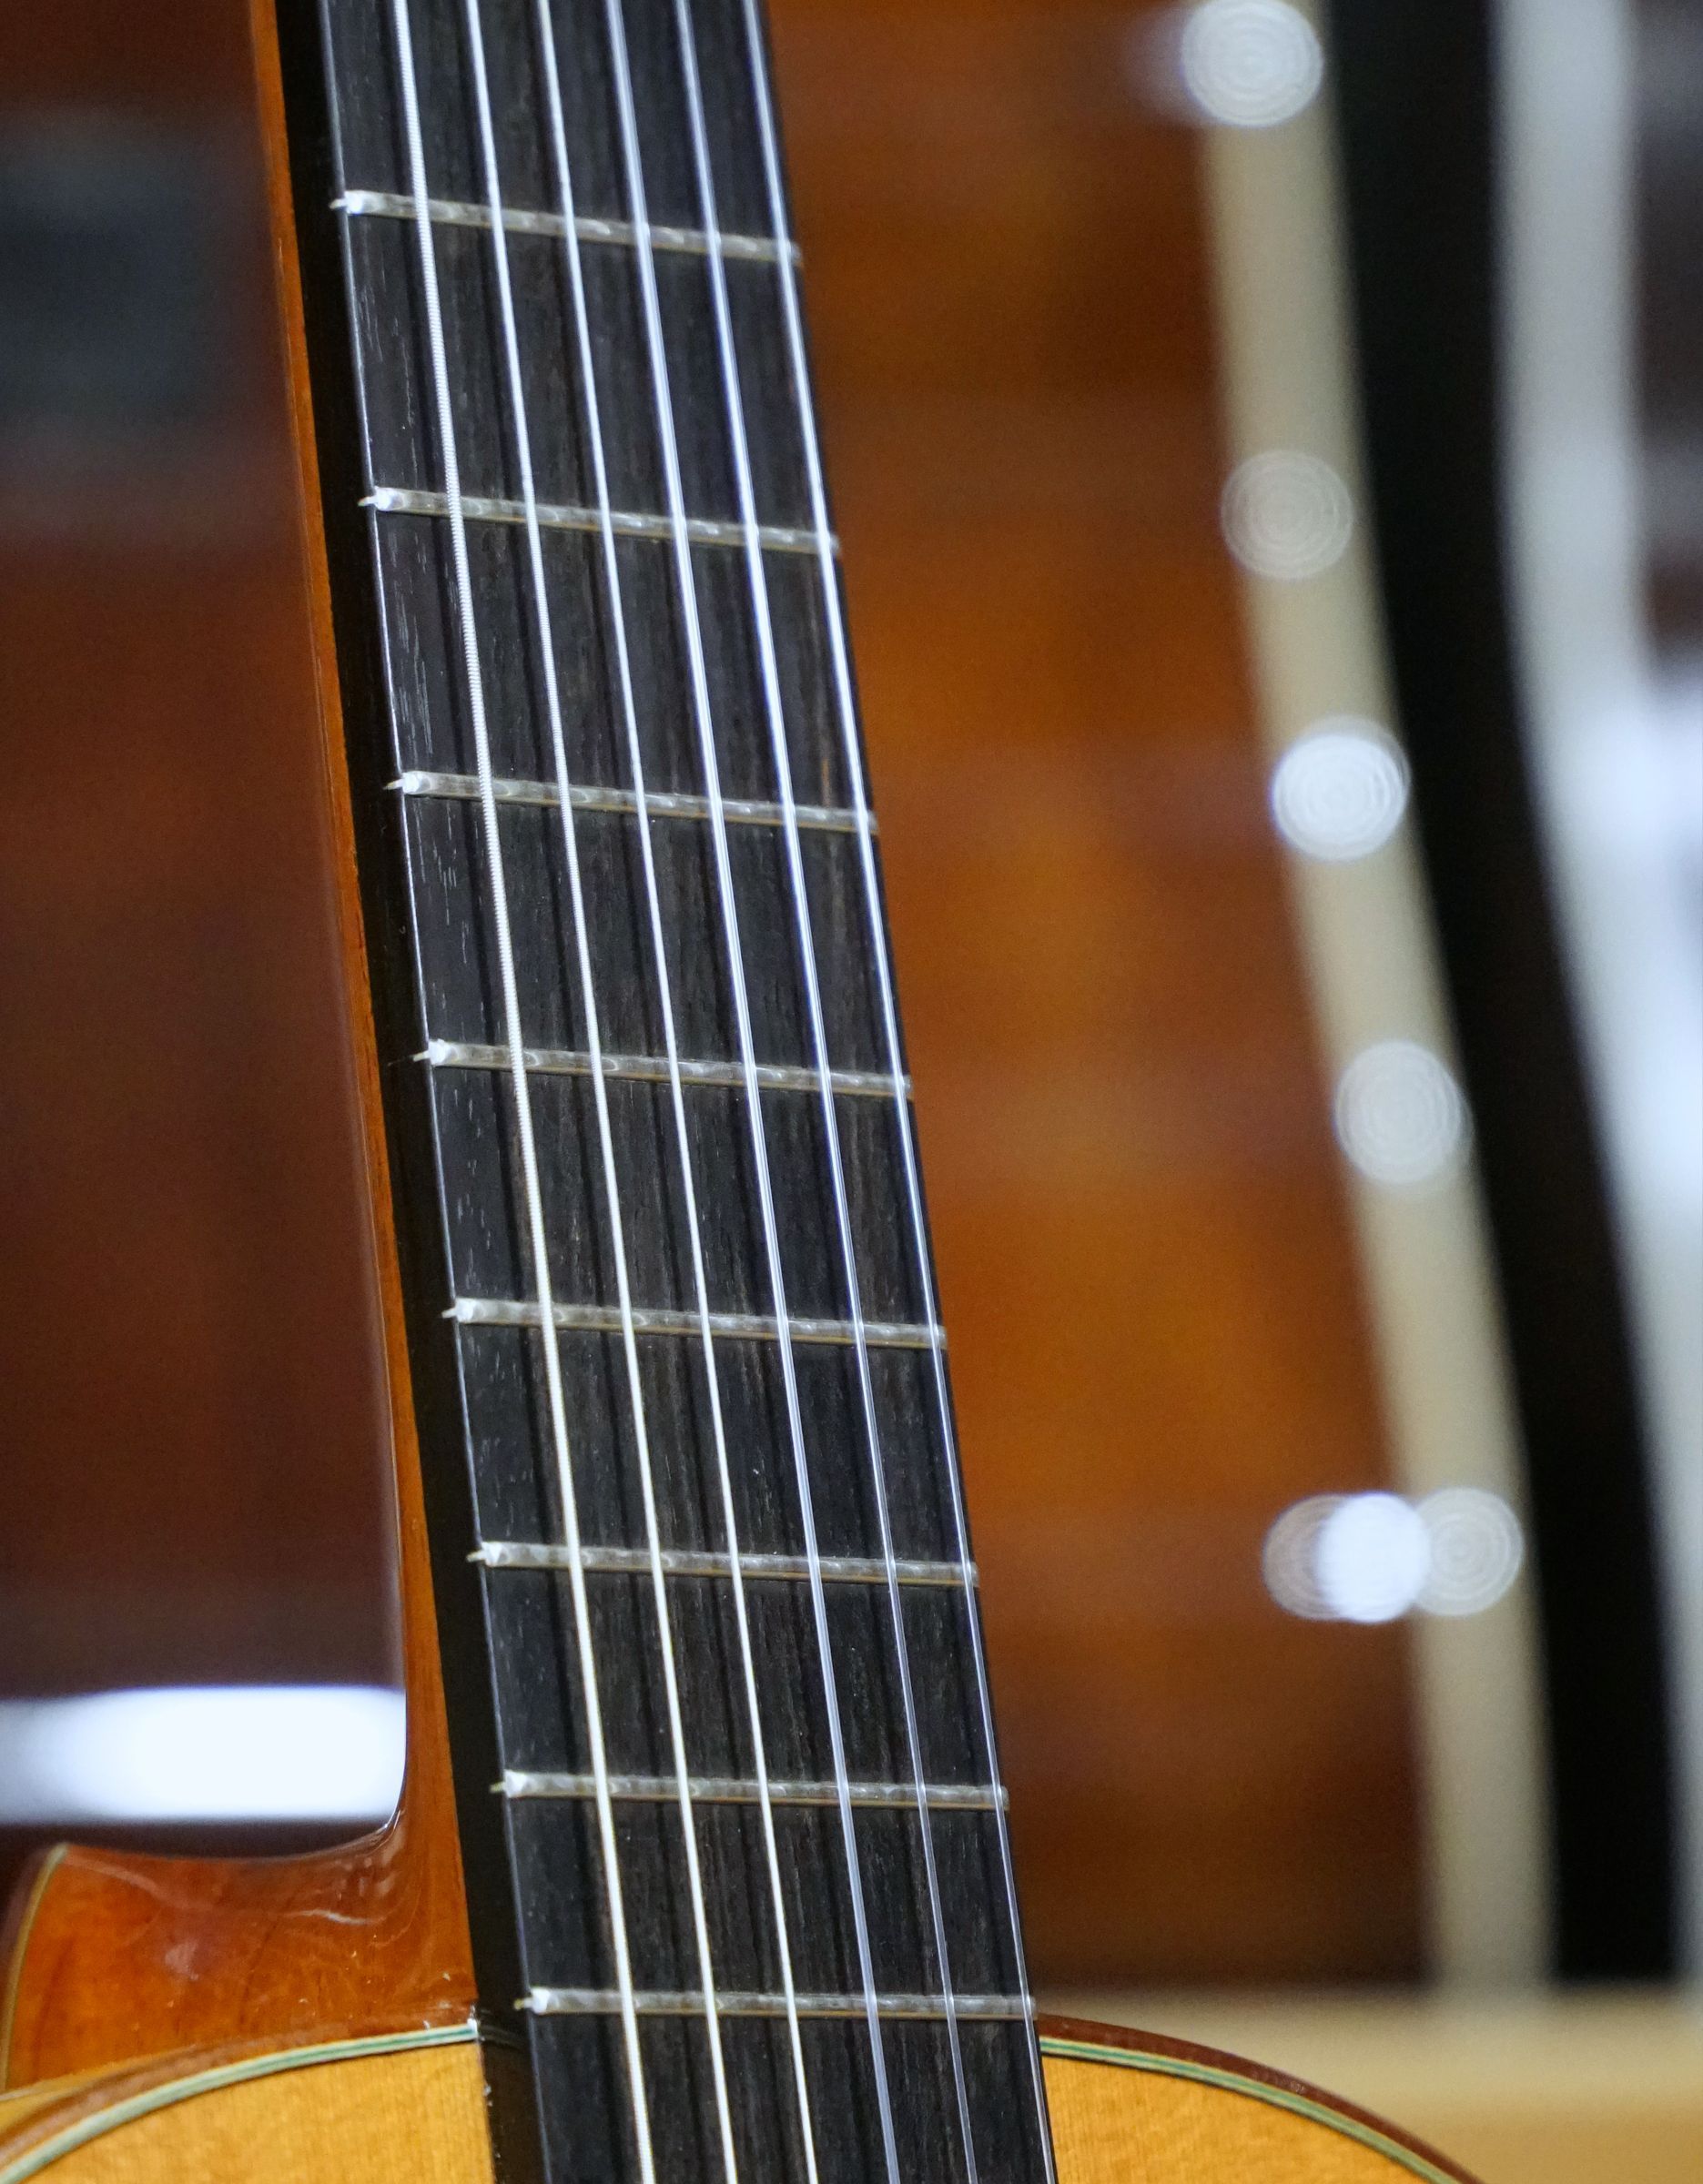 Фламенко гитара мастера Vicente Carillo 2019 г.в - купить в "Гитарном Клубе"